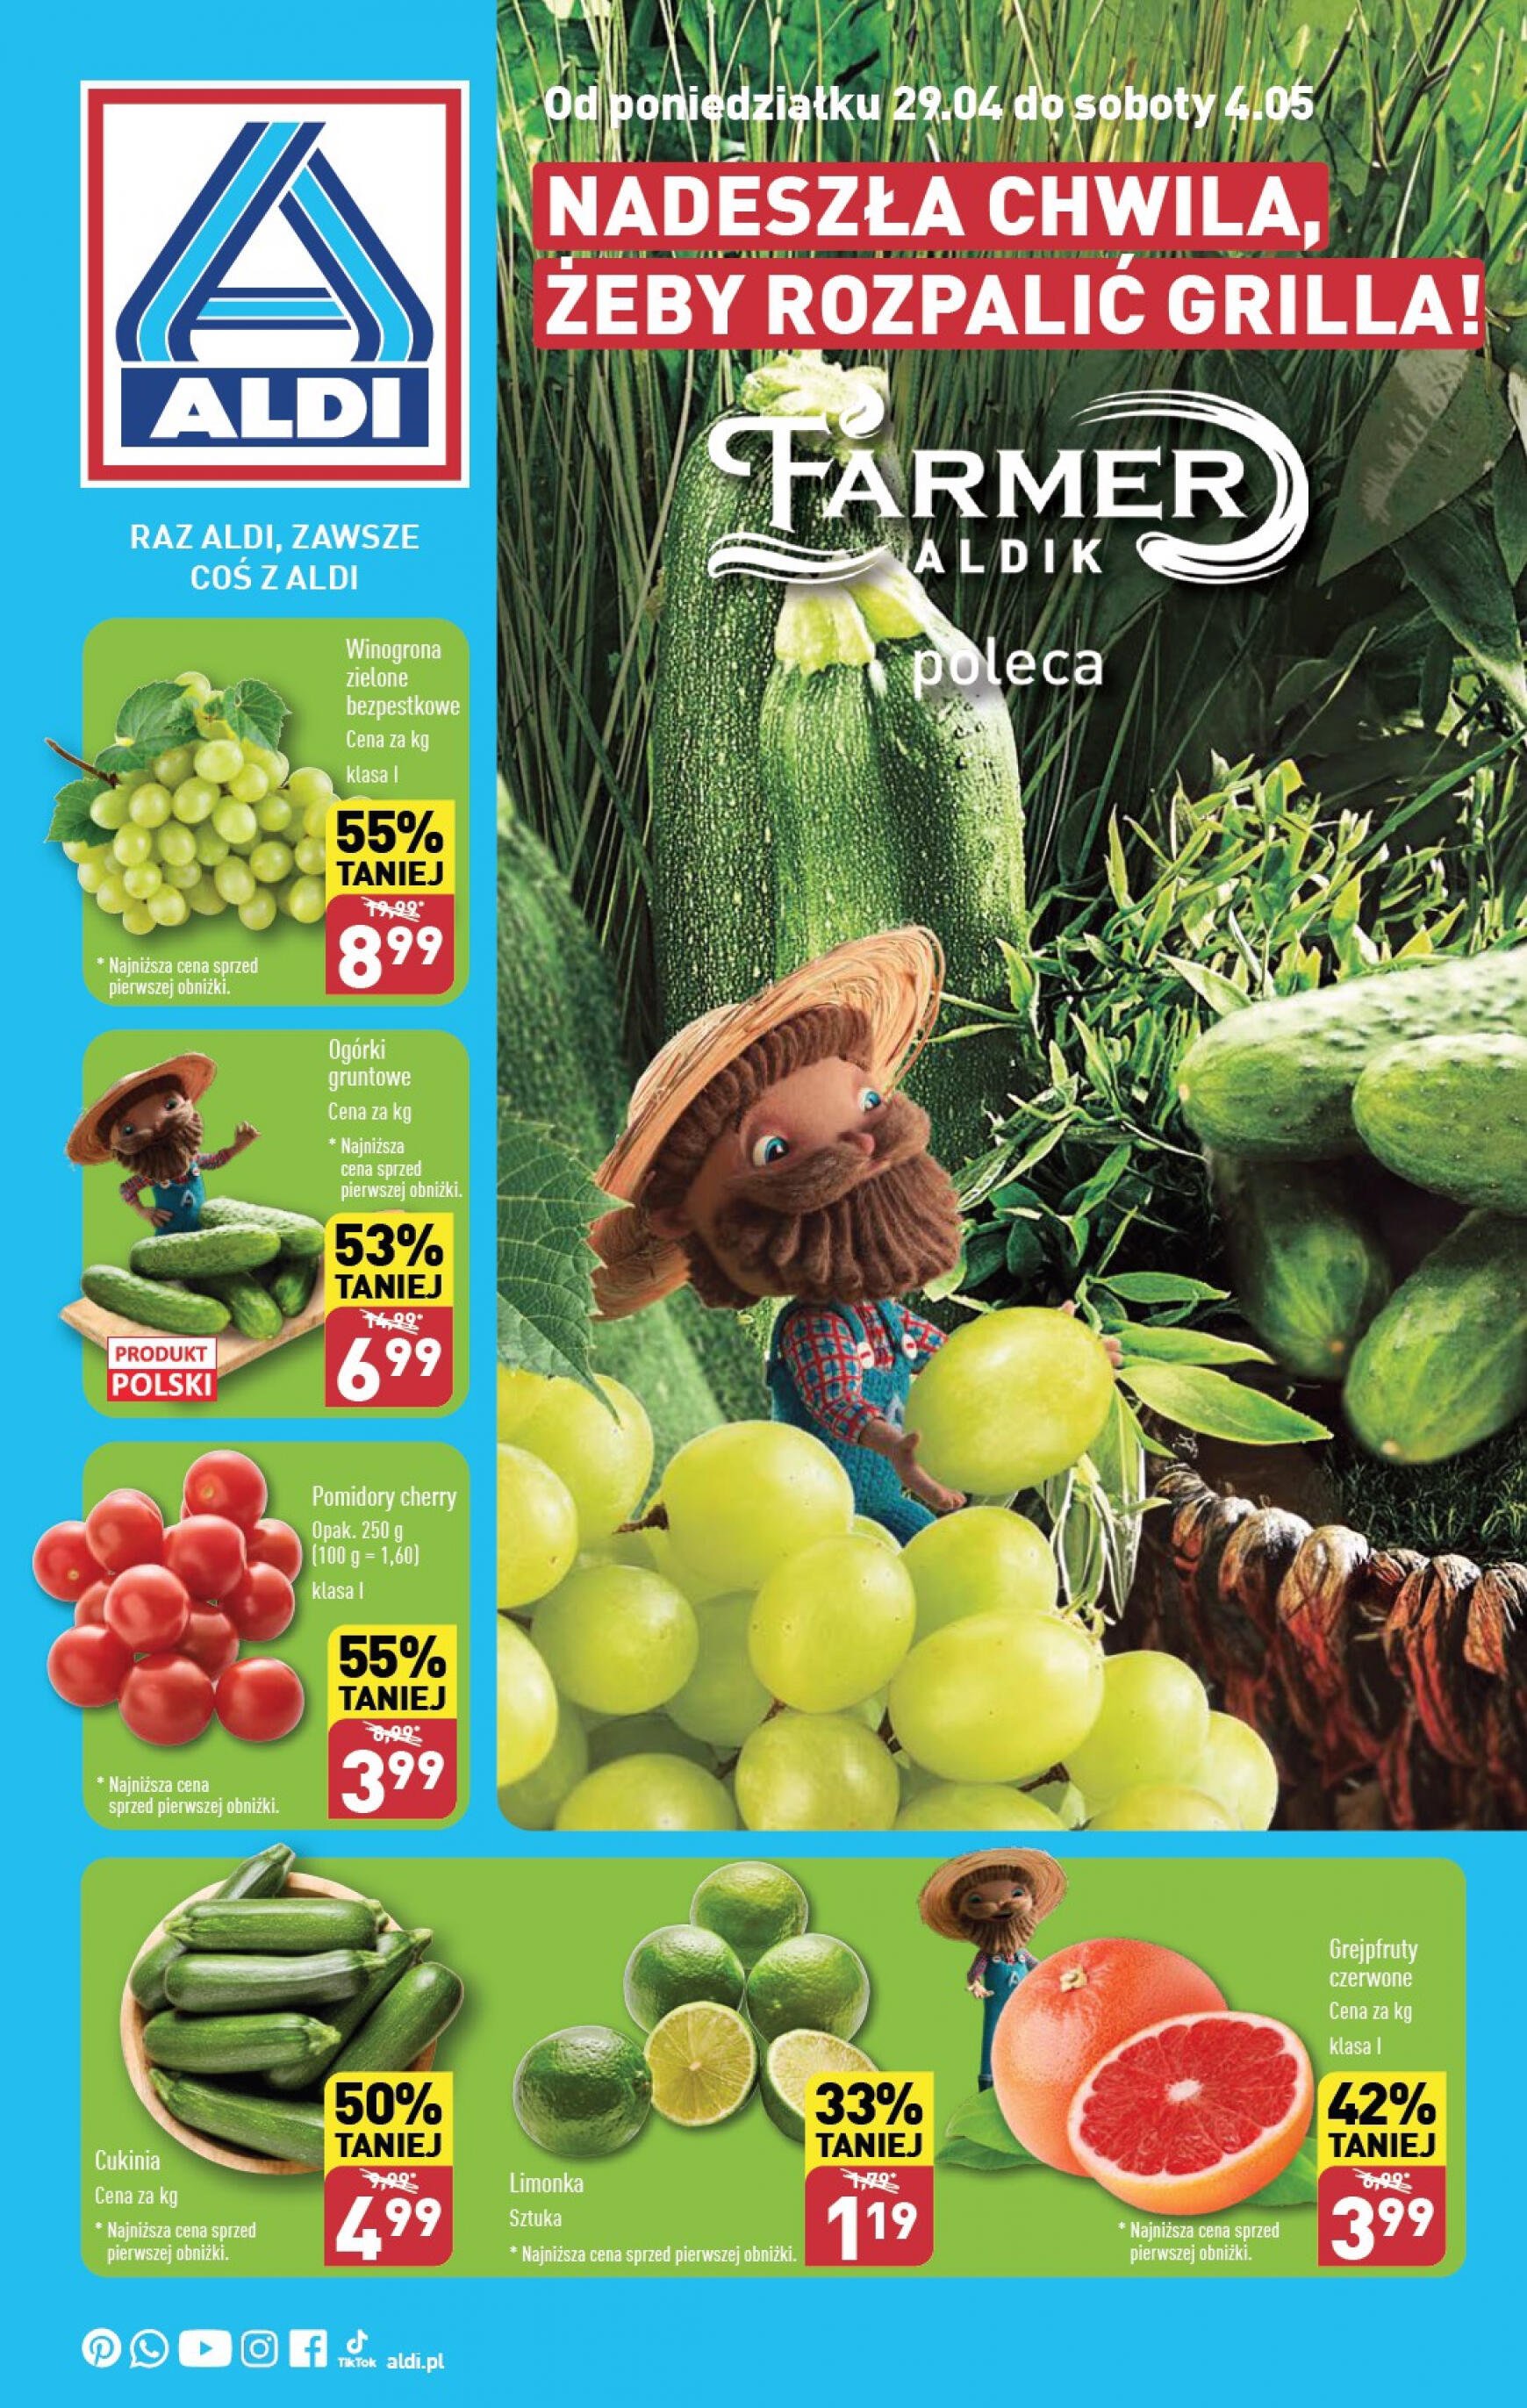 aldi - ALDI - Farmer ALDIK poleca świeże owoce i warzywa gazetka aktualna ważna od 29.04. - 04.05. - page: 1